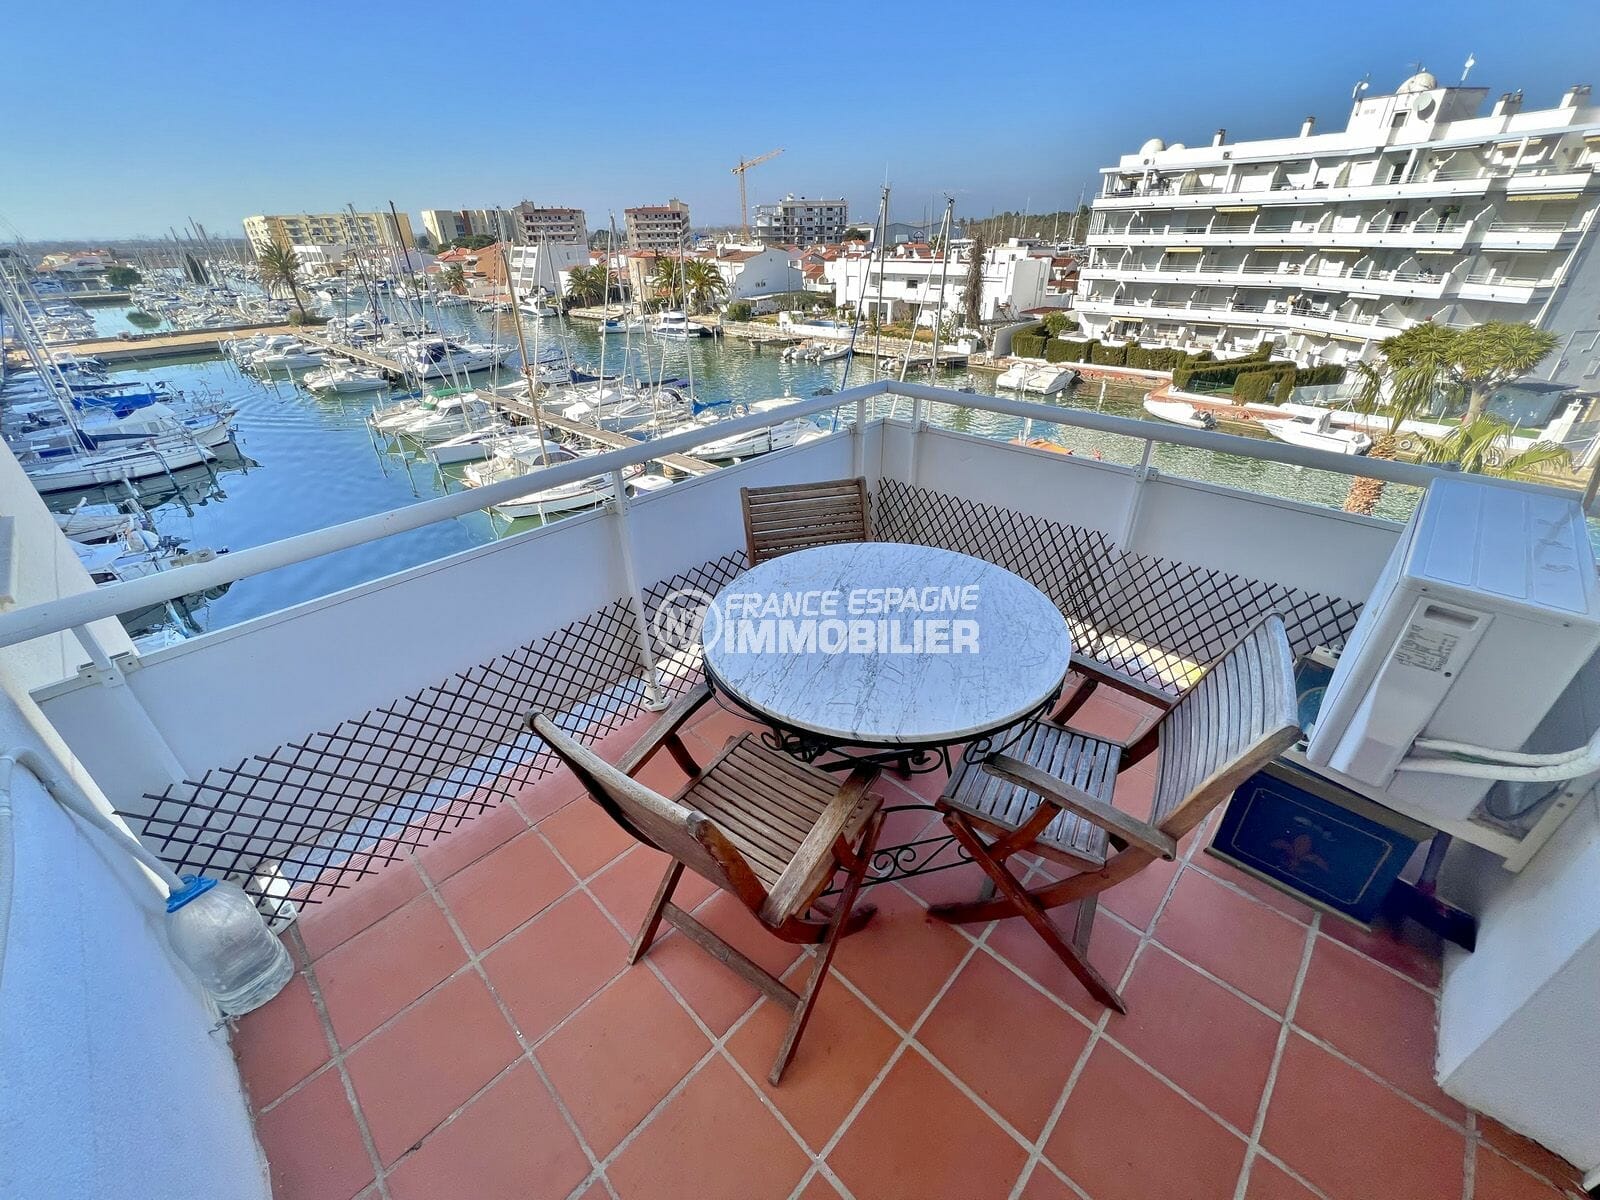 vente appartement rosas, 2 pièces 50 m2, résidence standing avec piscine, terrasse vue marina, proche plage